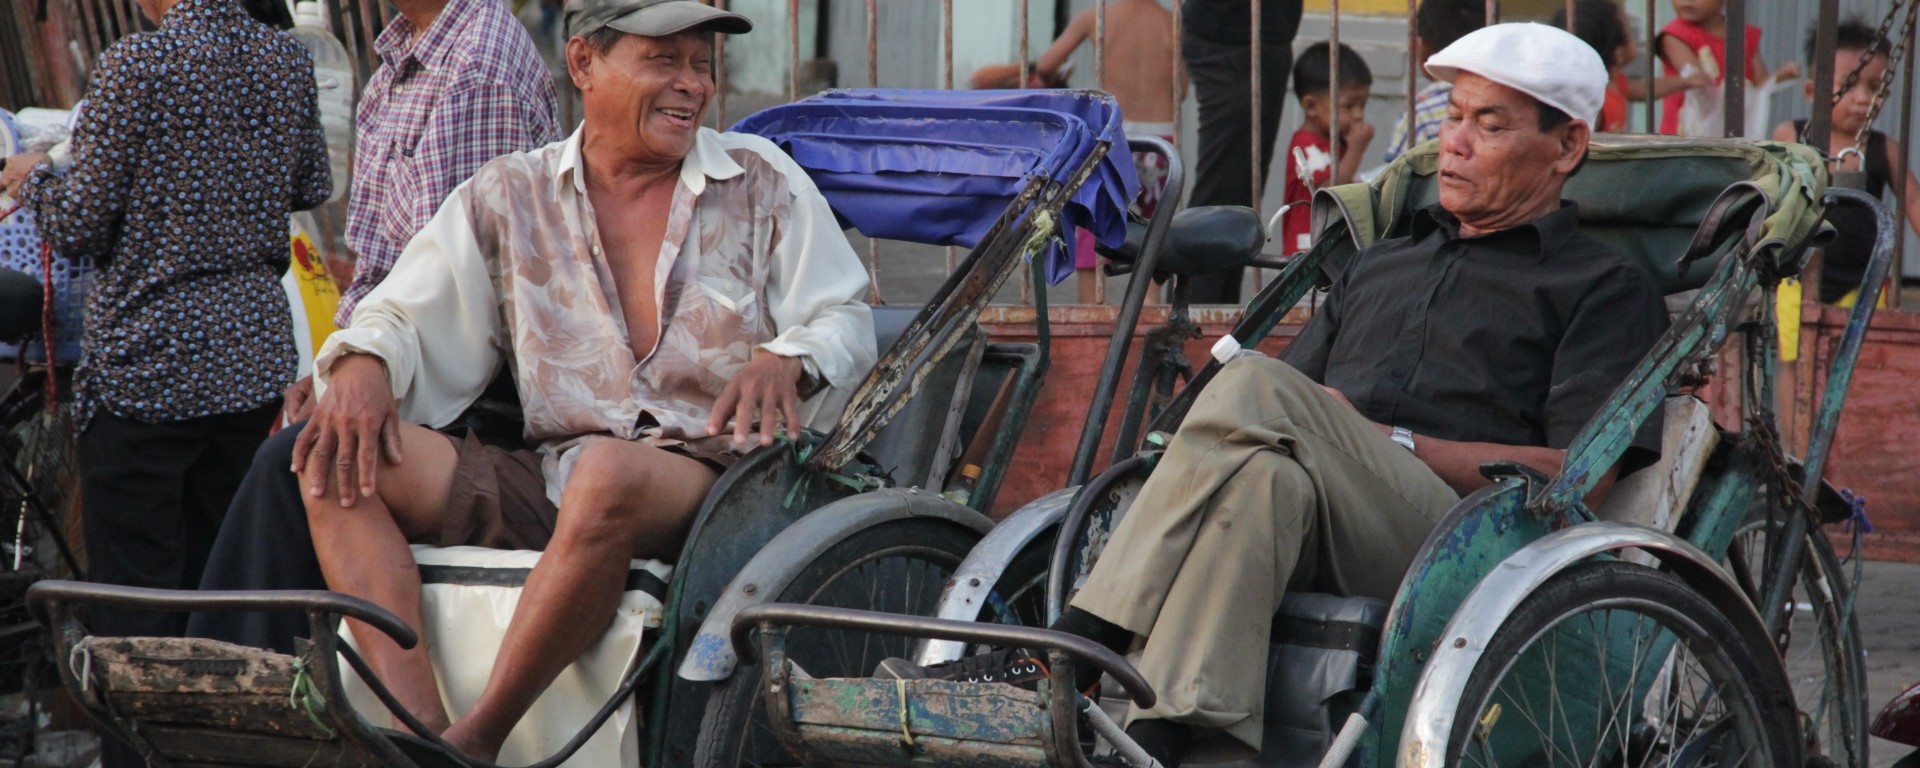 Entre deux promenades en rickshaw (tricycle qui permet de transporter les touristes), les hommes prennent une pause (© Jérôme Decoster).